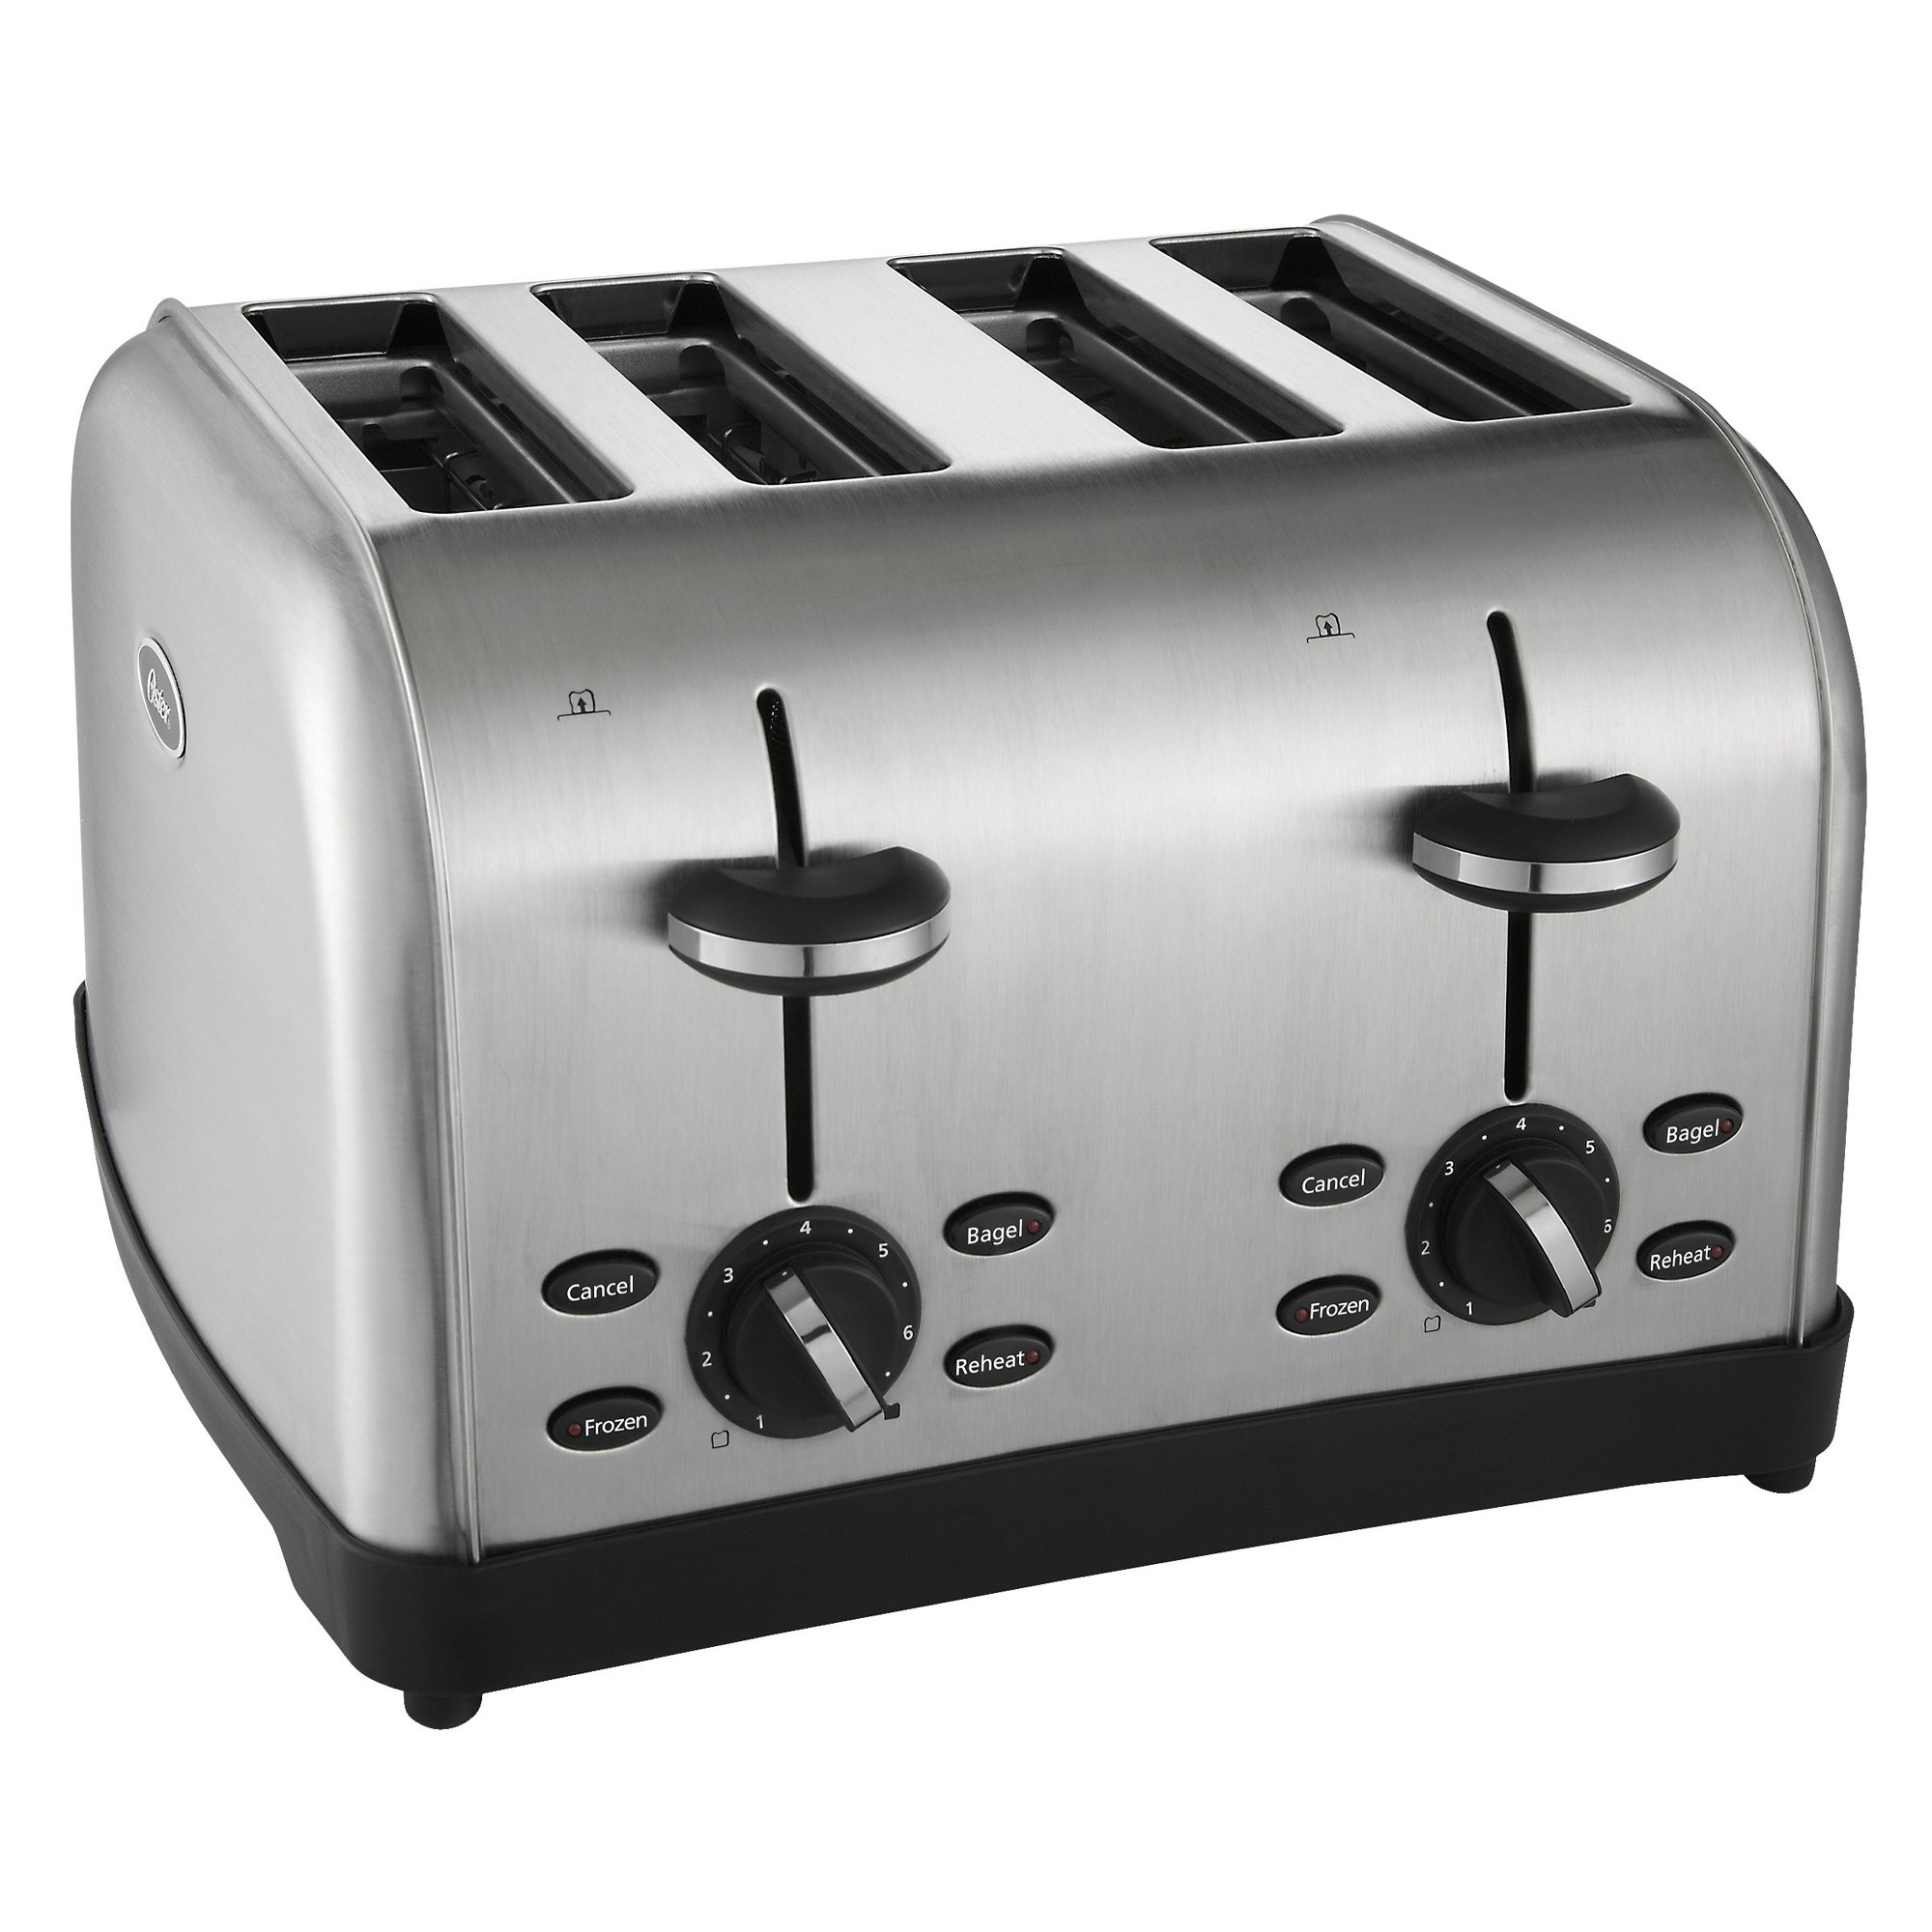 Oster 4 Slice Stainless Steel Toaster, TSSTRTWF4S